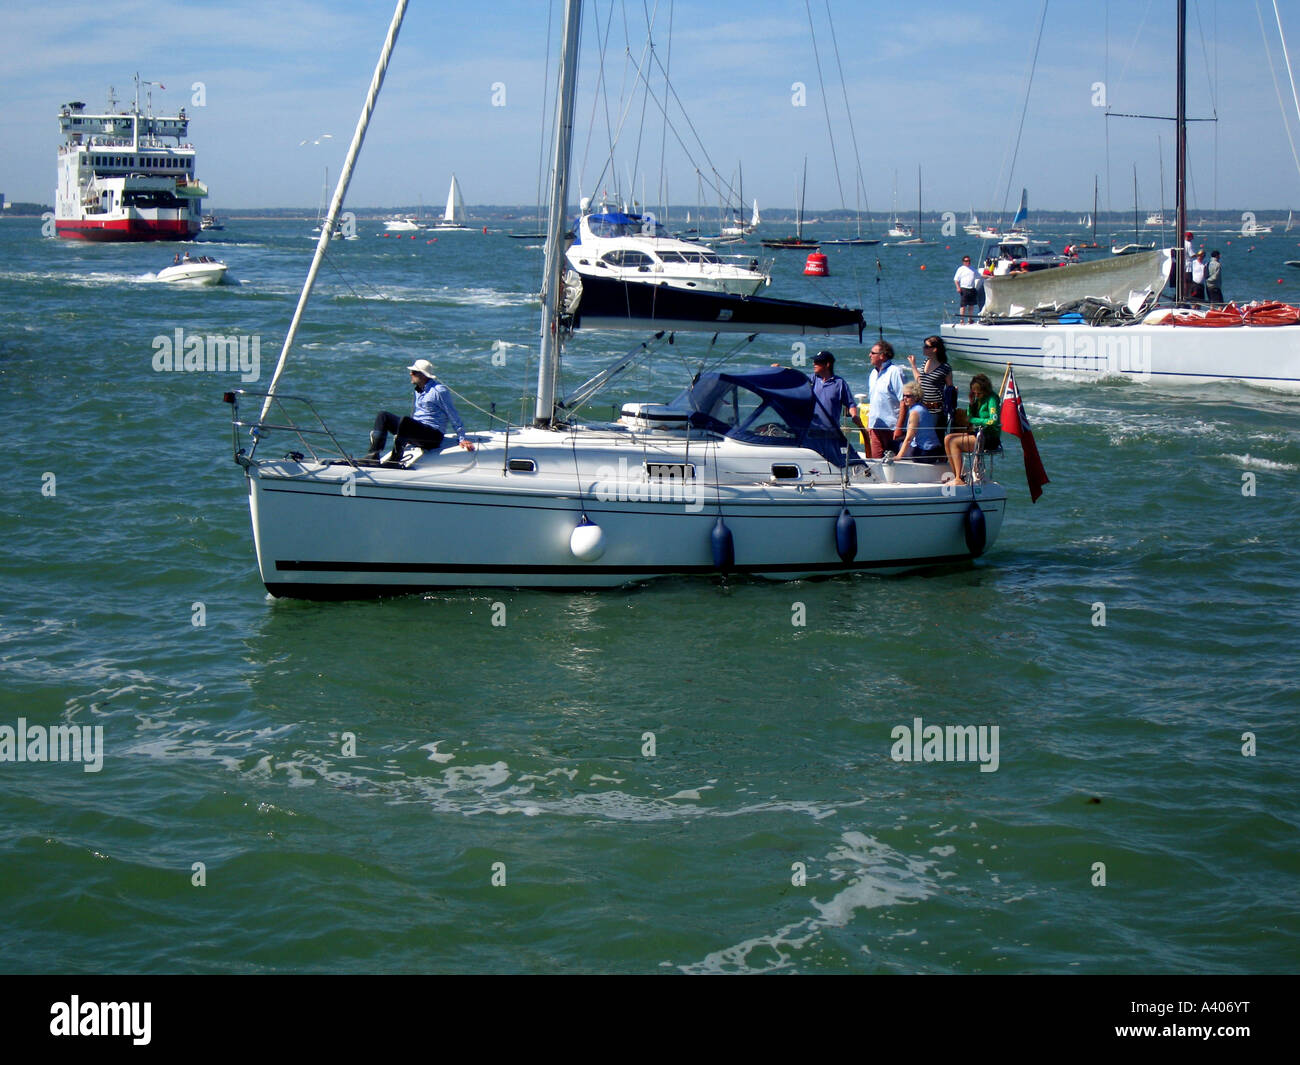 Location de bateaux , course , sea day, journée ensoleillée, Banque D'Images